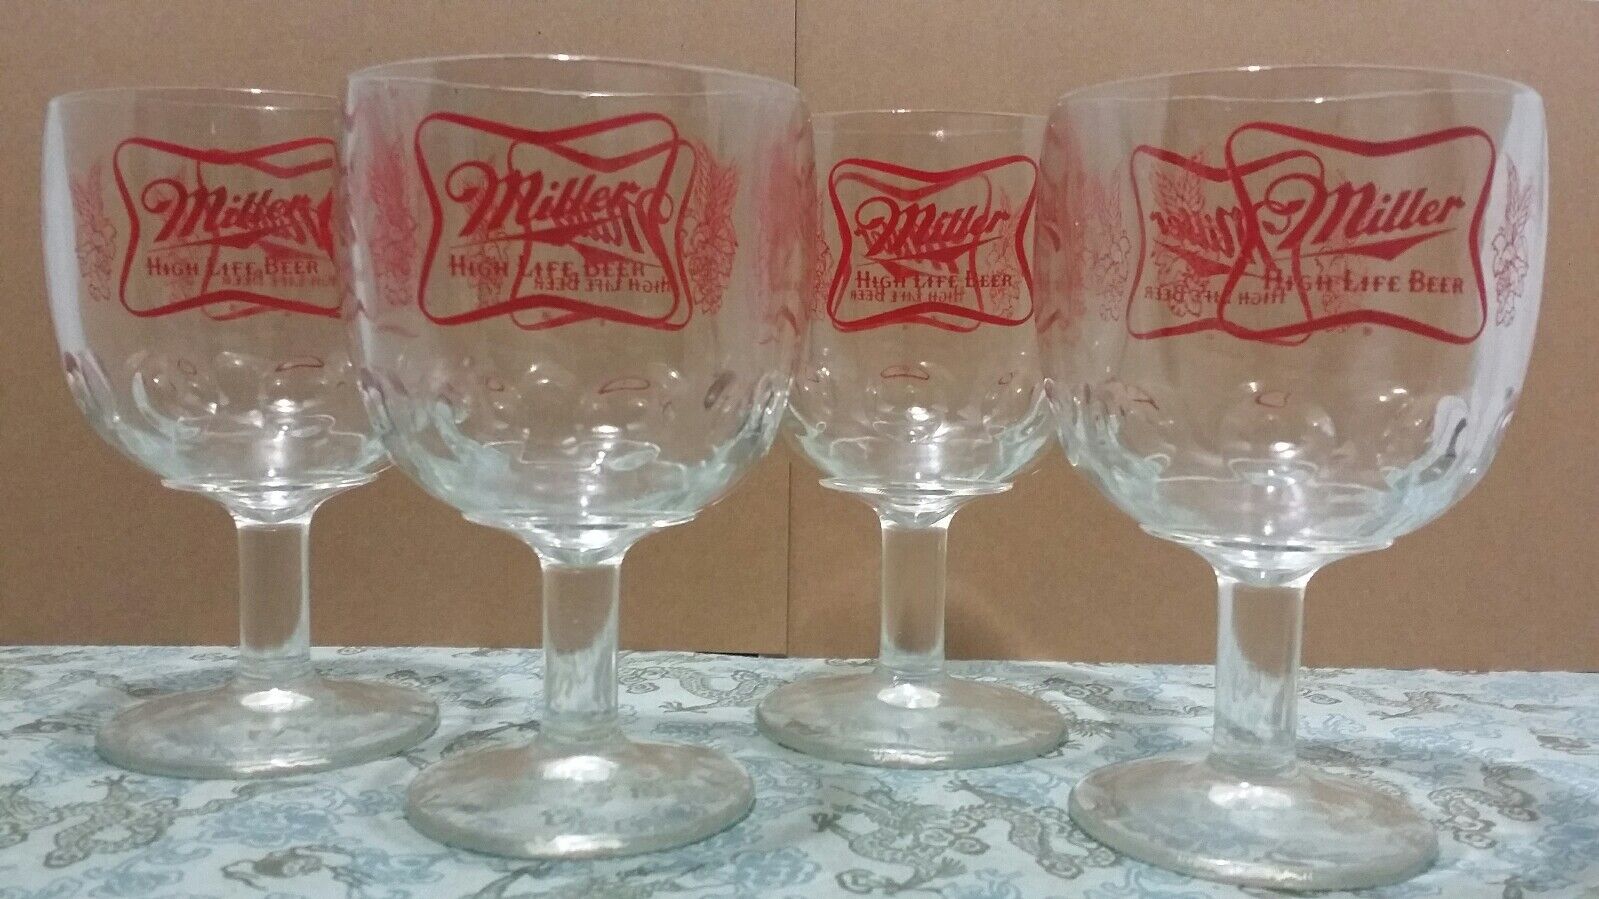 4 Vintage Miller High Life Beer Goblet Glasses Stemmed Chalice Summer Home Bar Miller - фотография #2